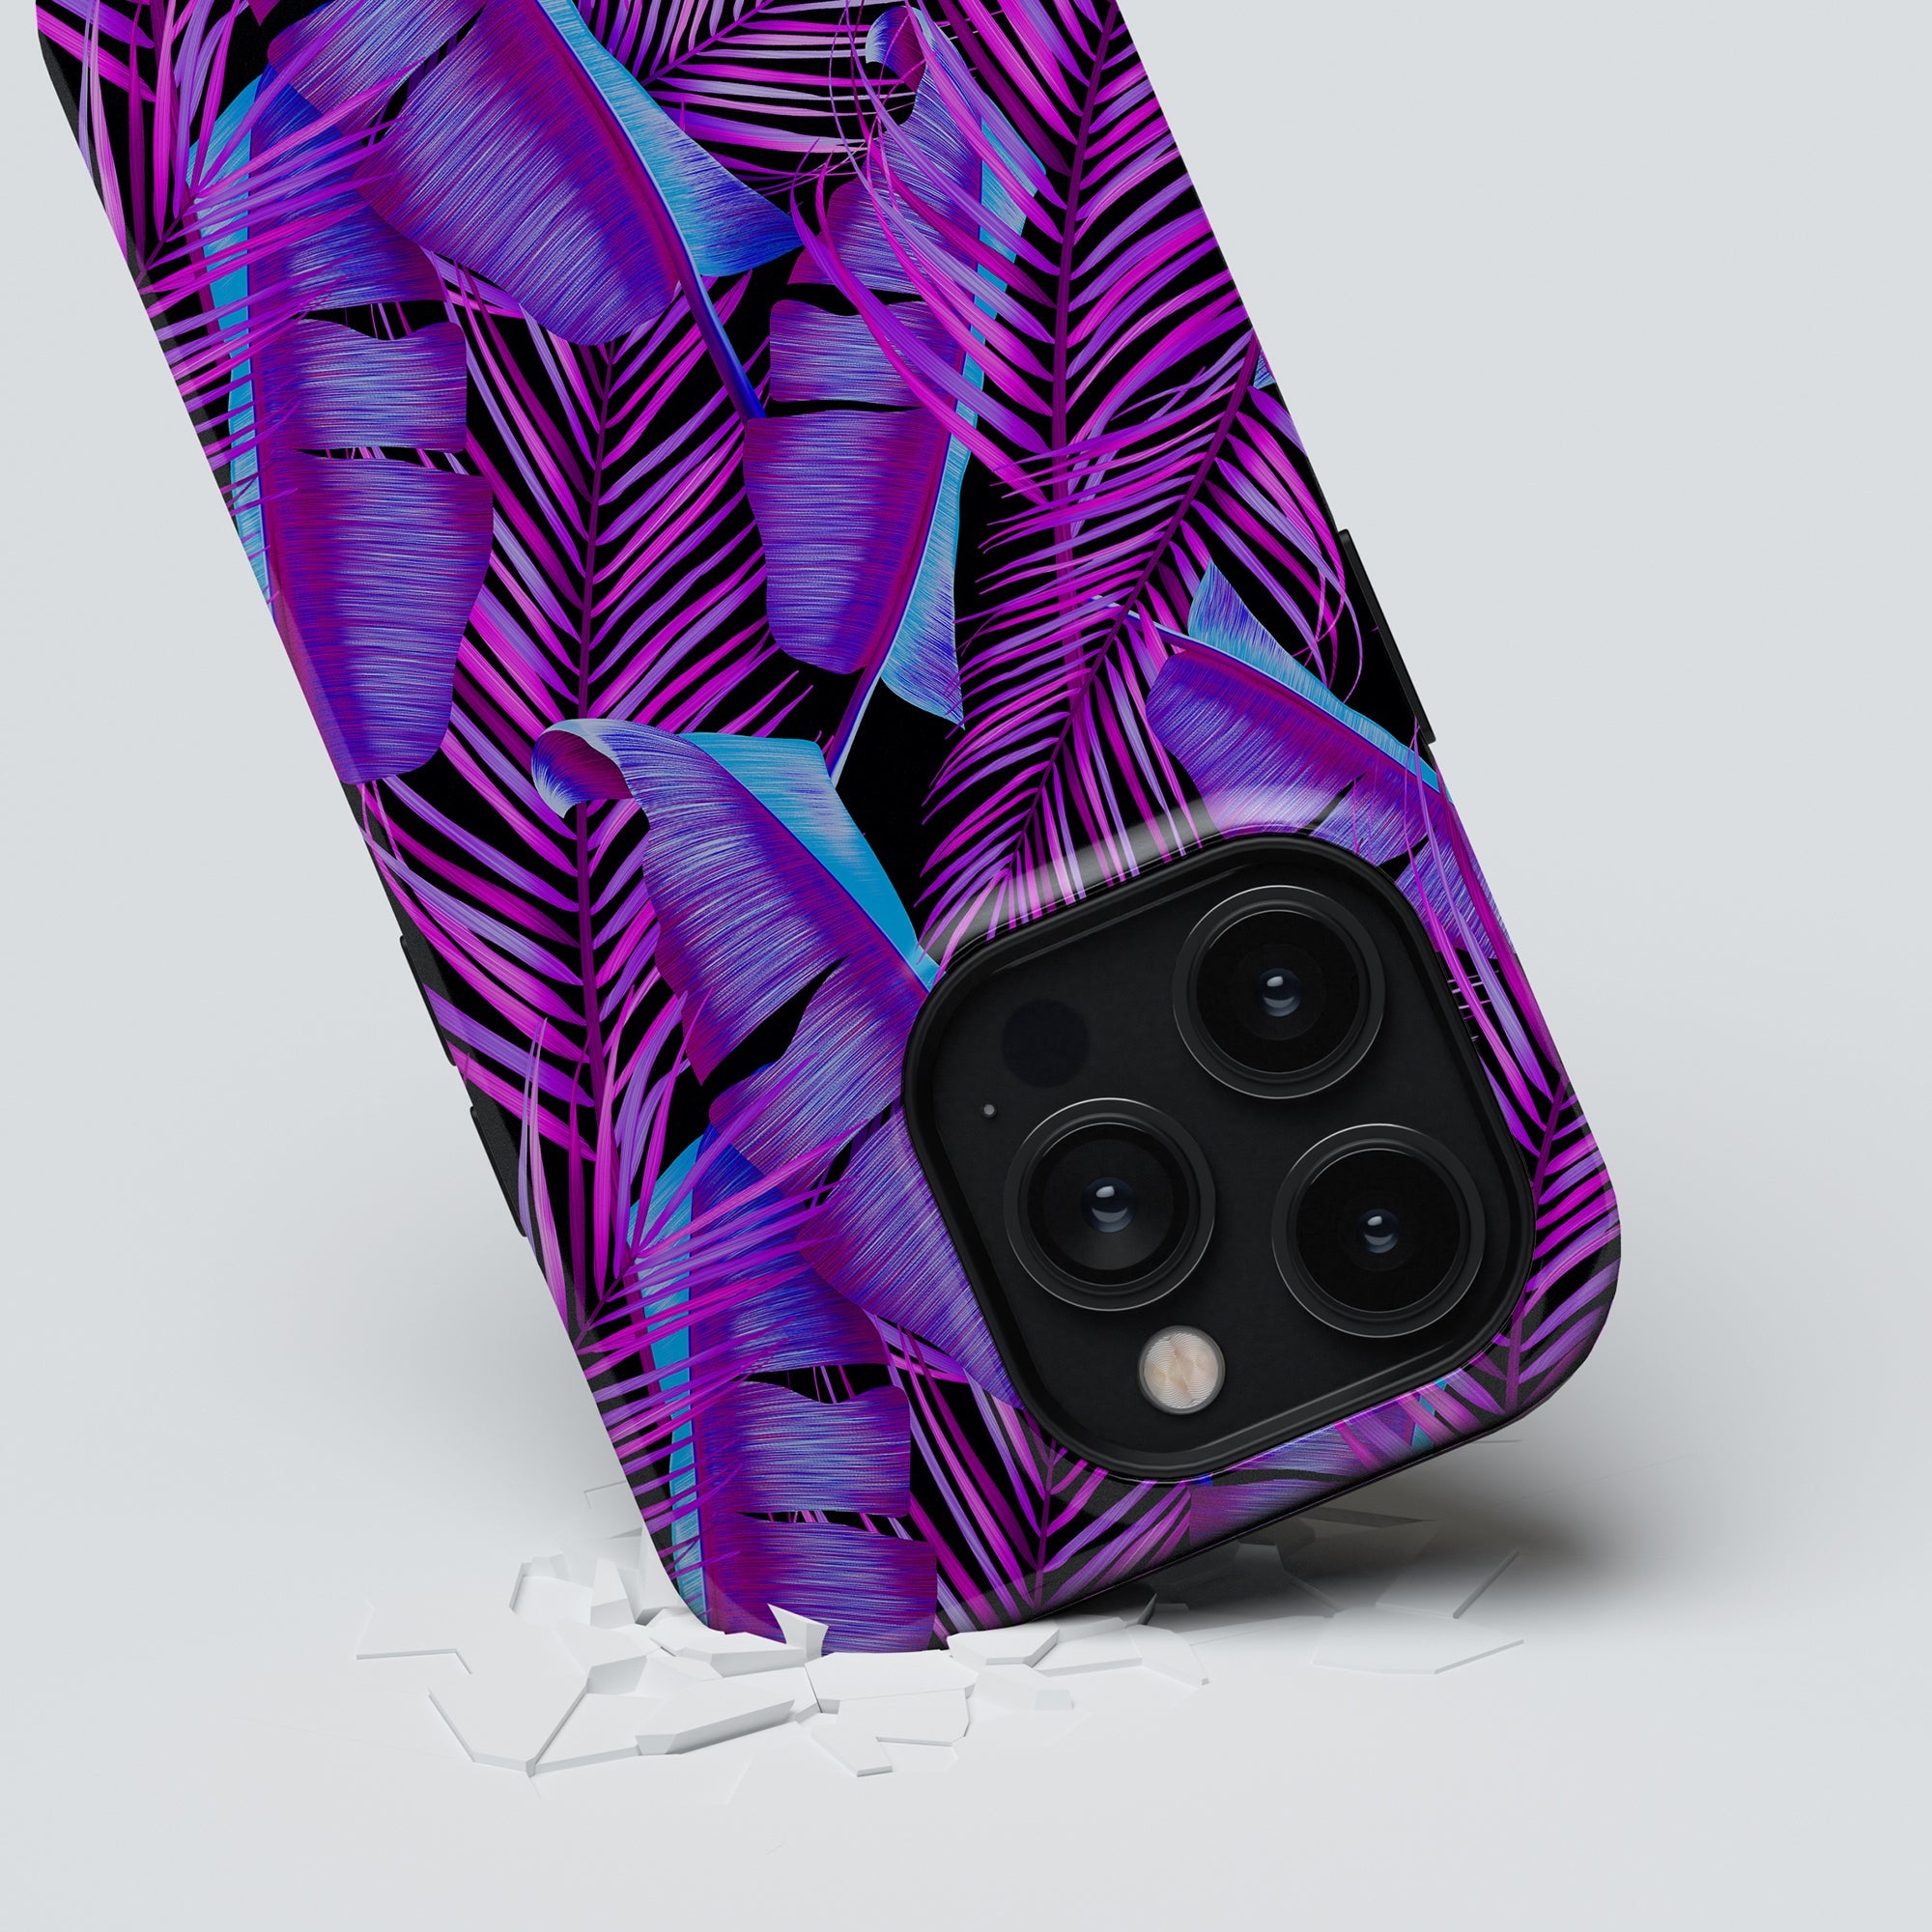 Med sitt tropiska design i levande färger kommer detta mobilskal, Tropical Vibes - Tough case, att ge din telefon en fräsch och unik look. Skrä